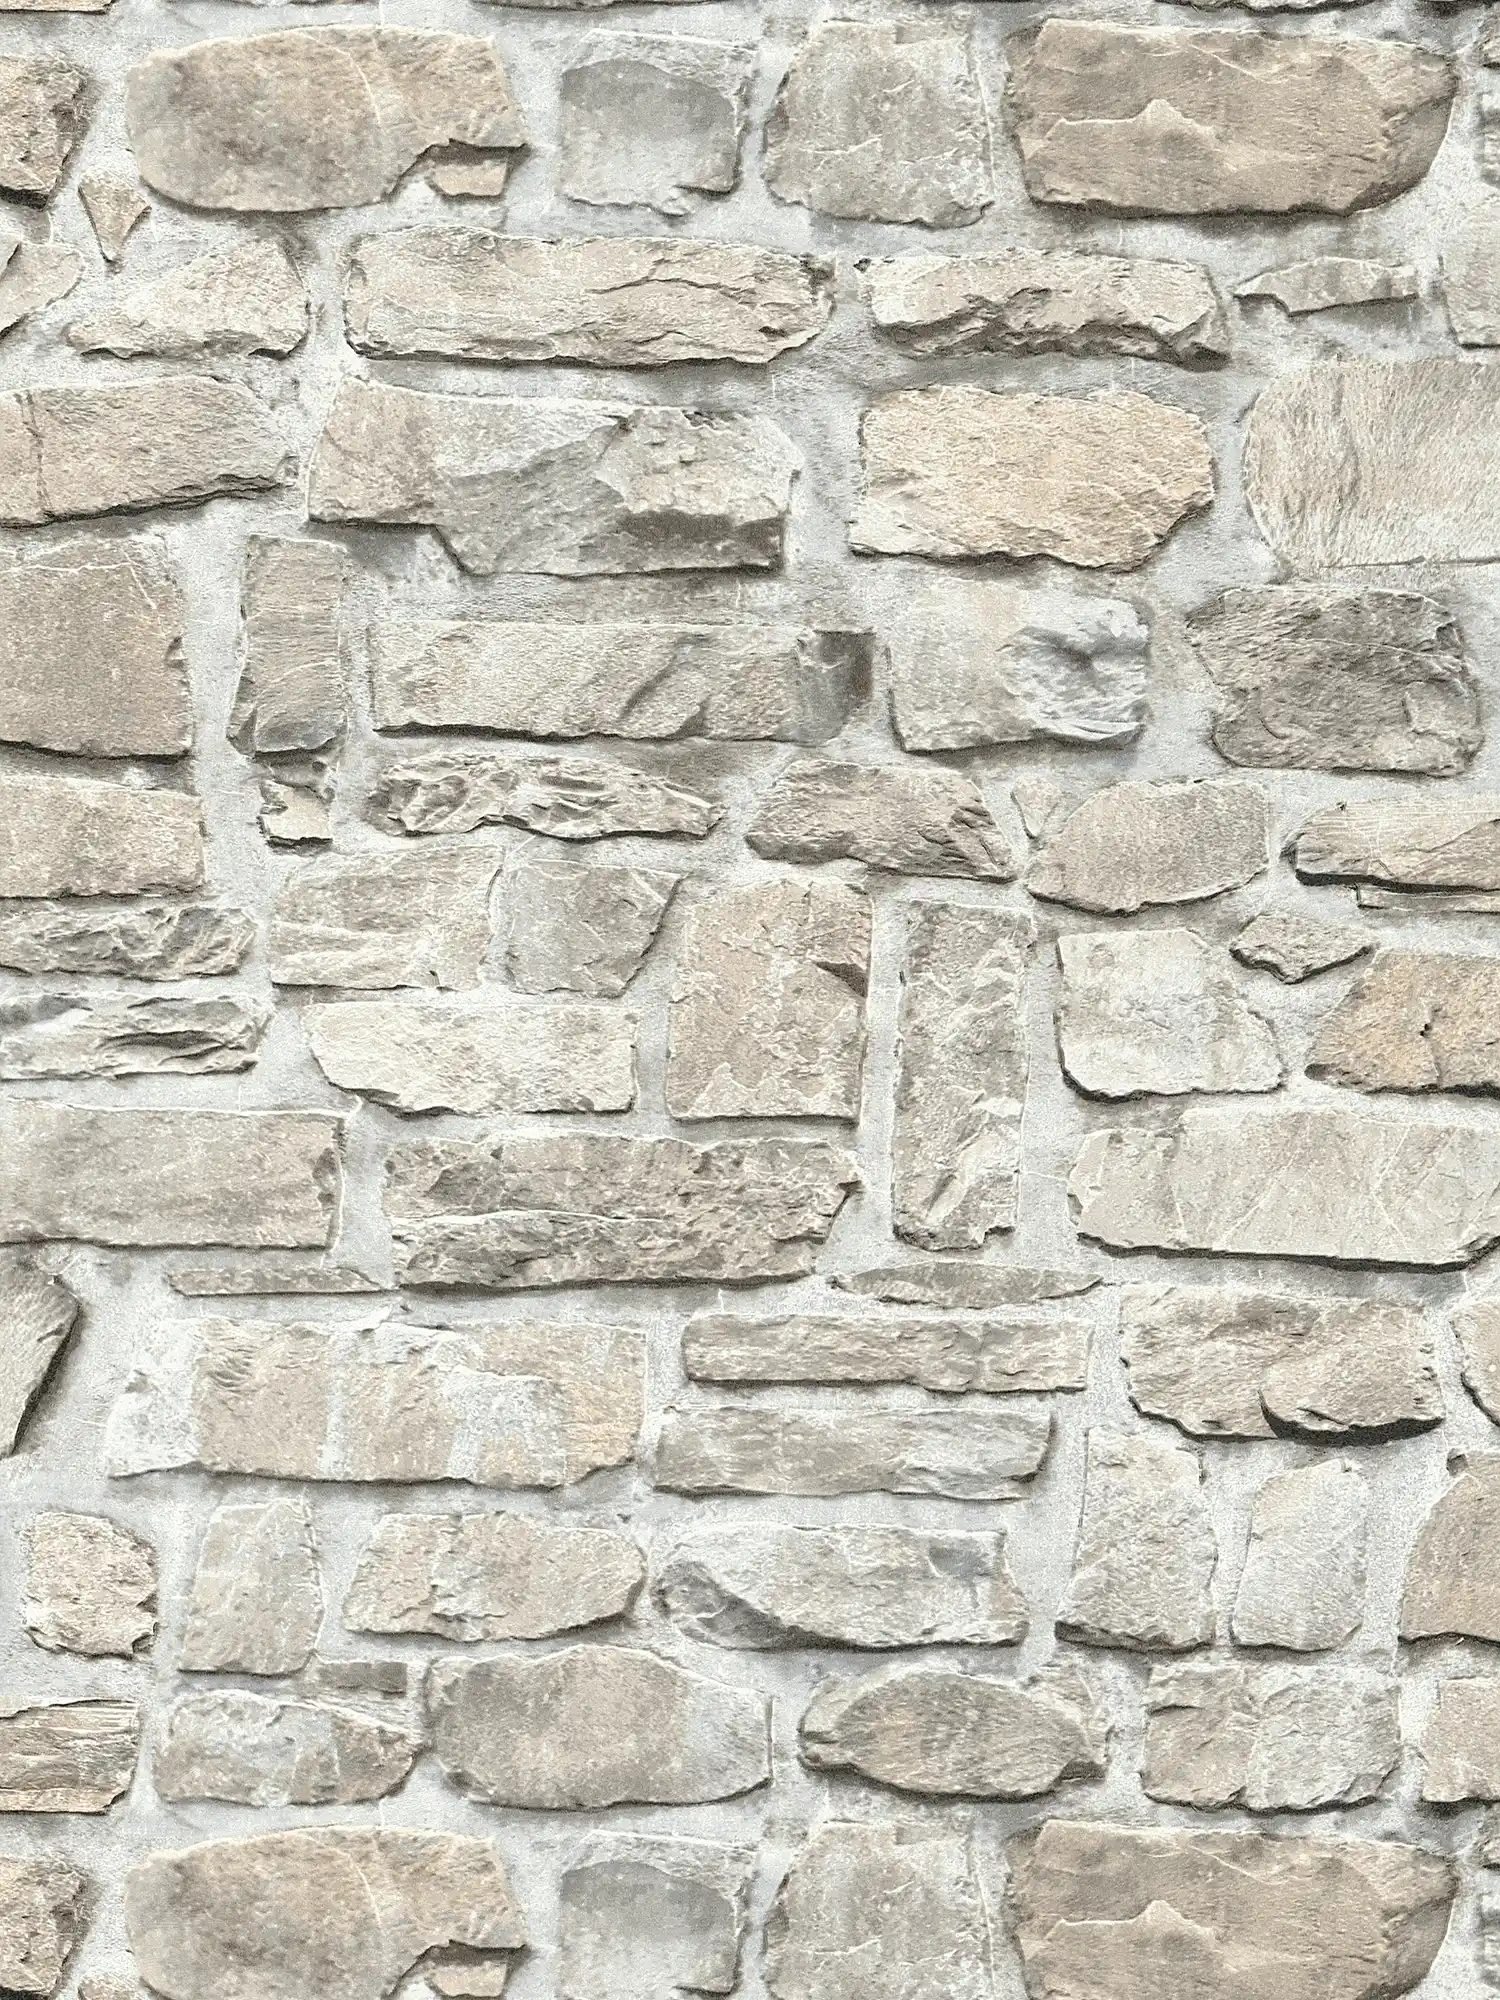         Steintapete mit Naturstein Mauerwerk – Grau, Beige
    